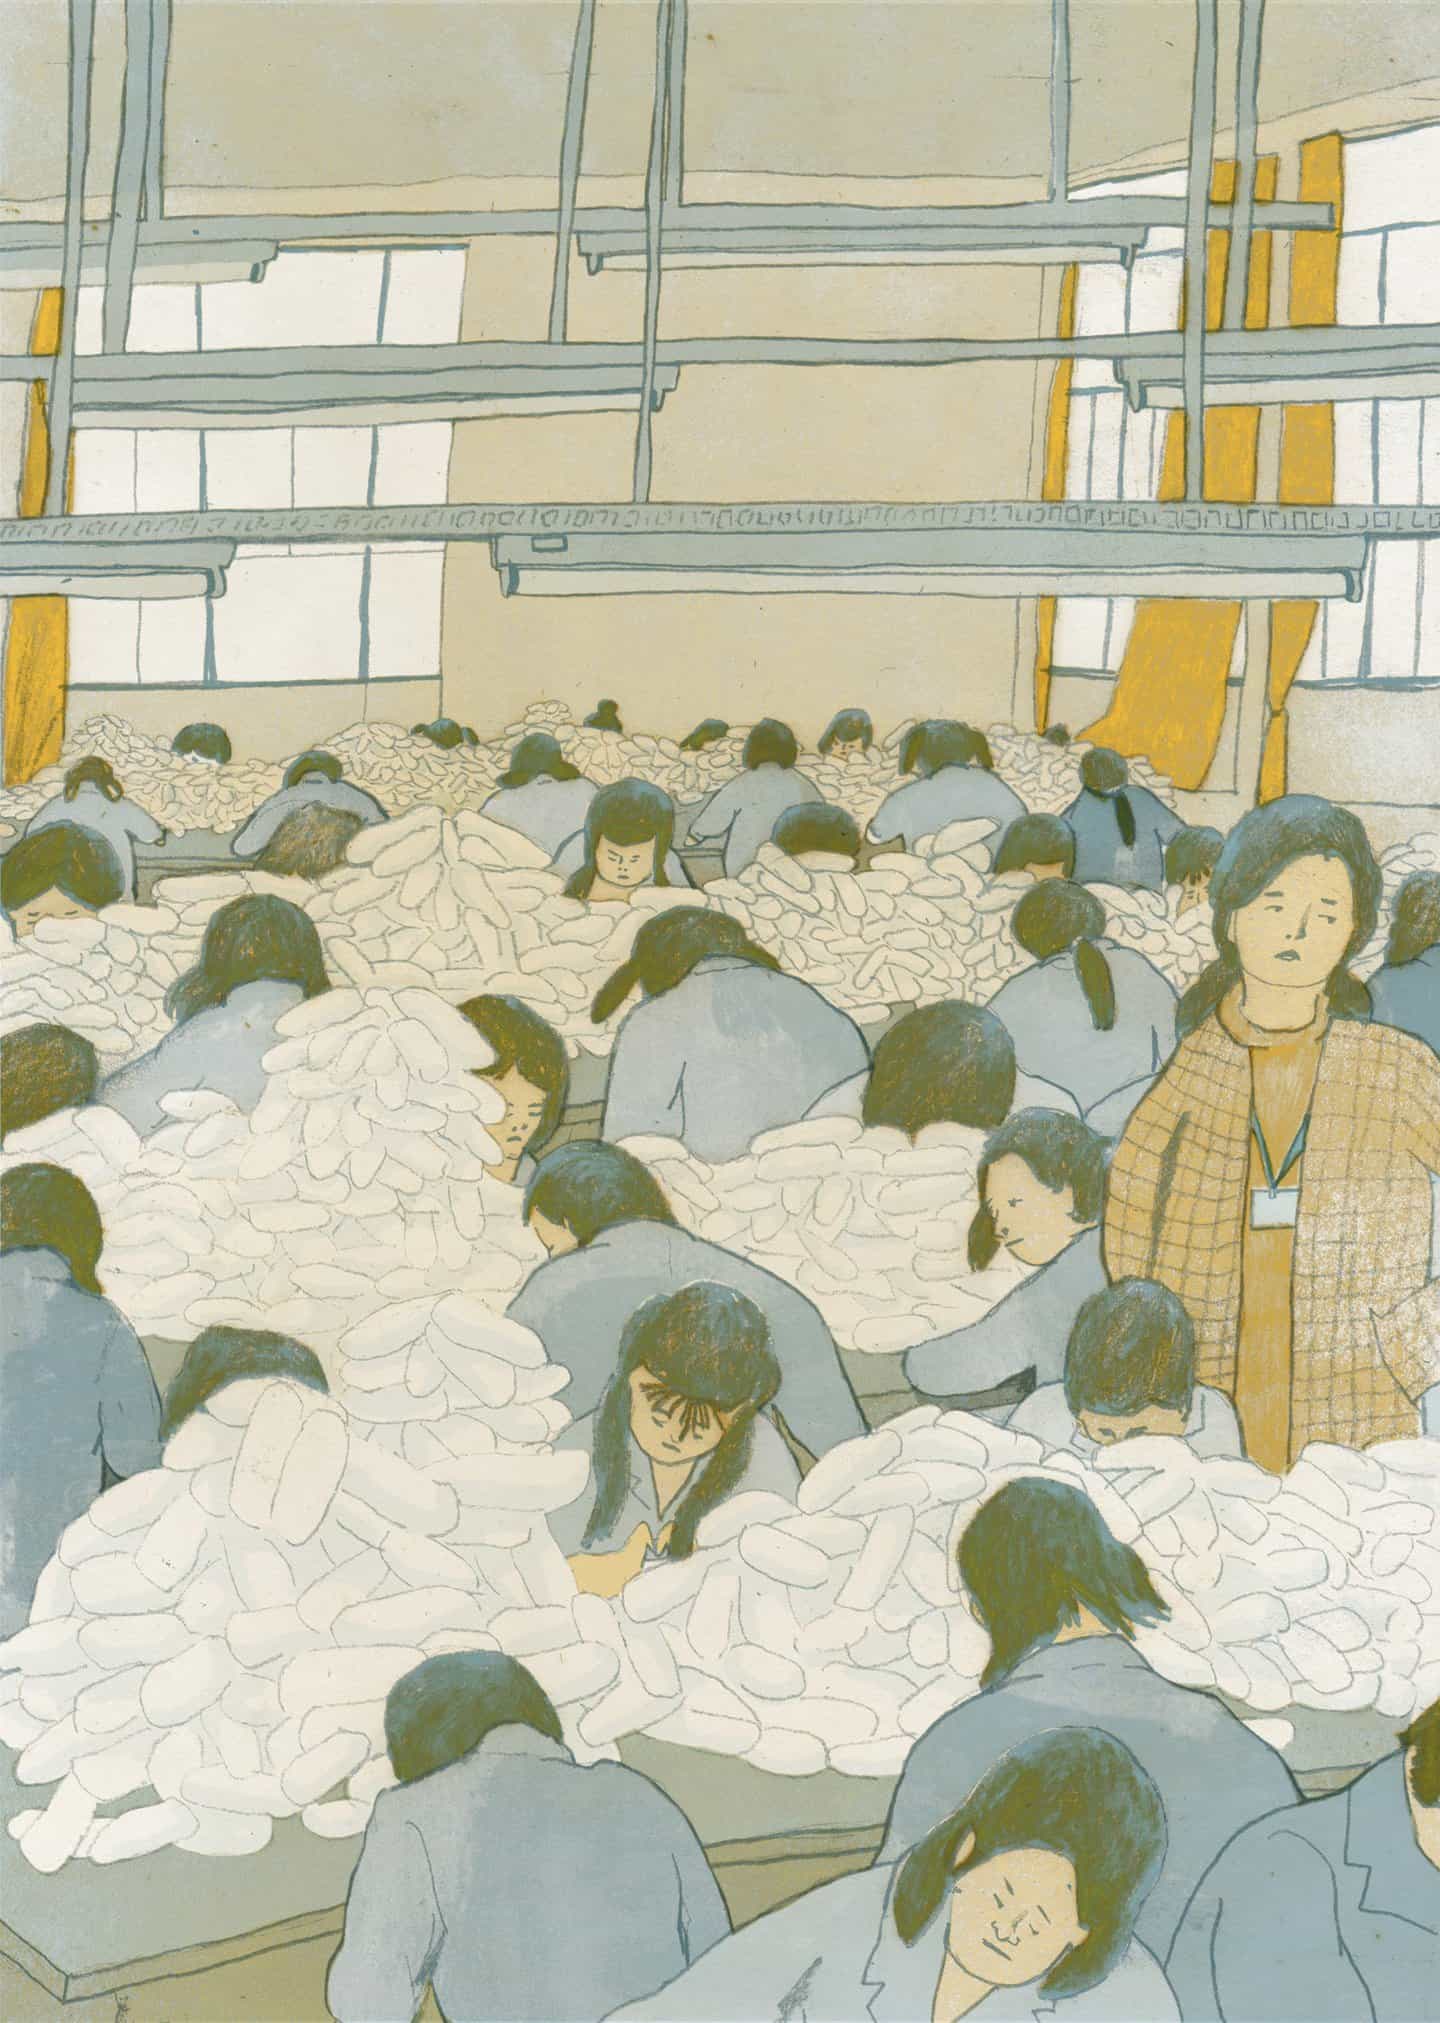 El ilustrador Chenyue Yuan profundiza en las historias sociales para contar la historia de los trabajadores chinos que viven y trabajan en fábricas